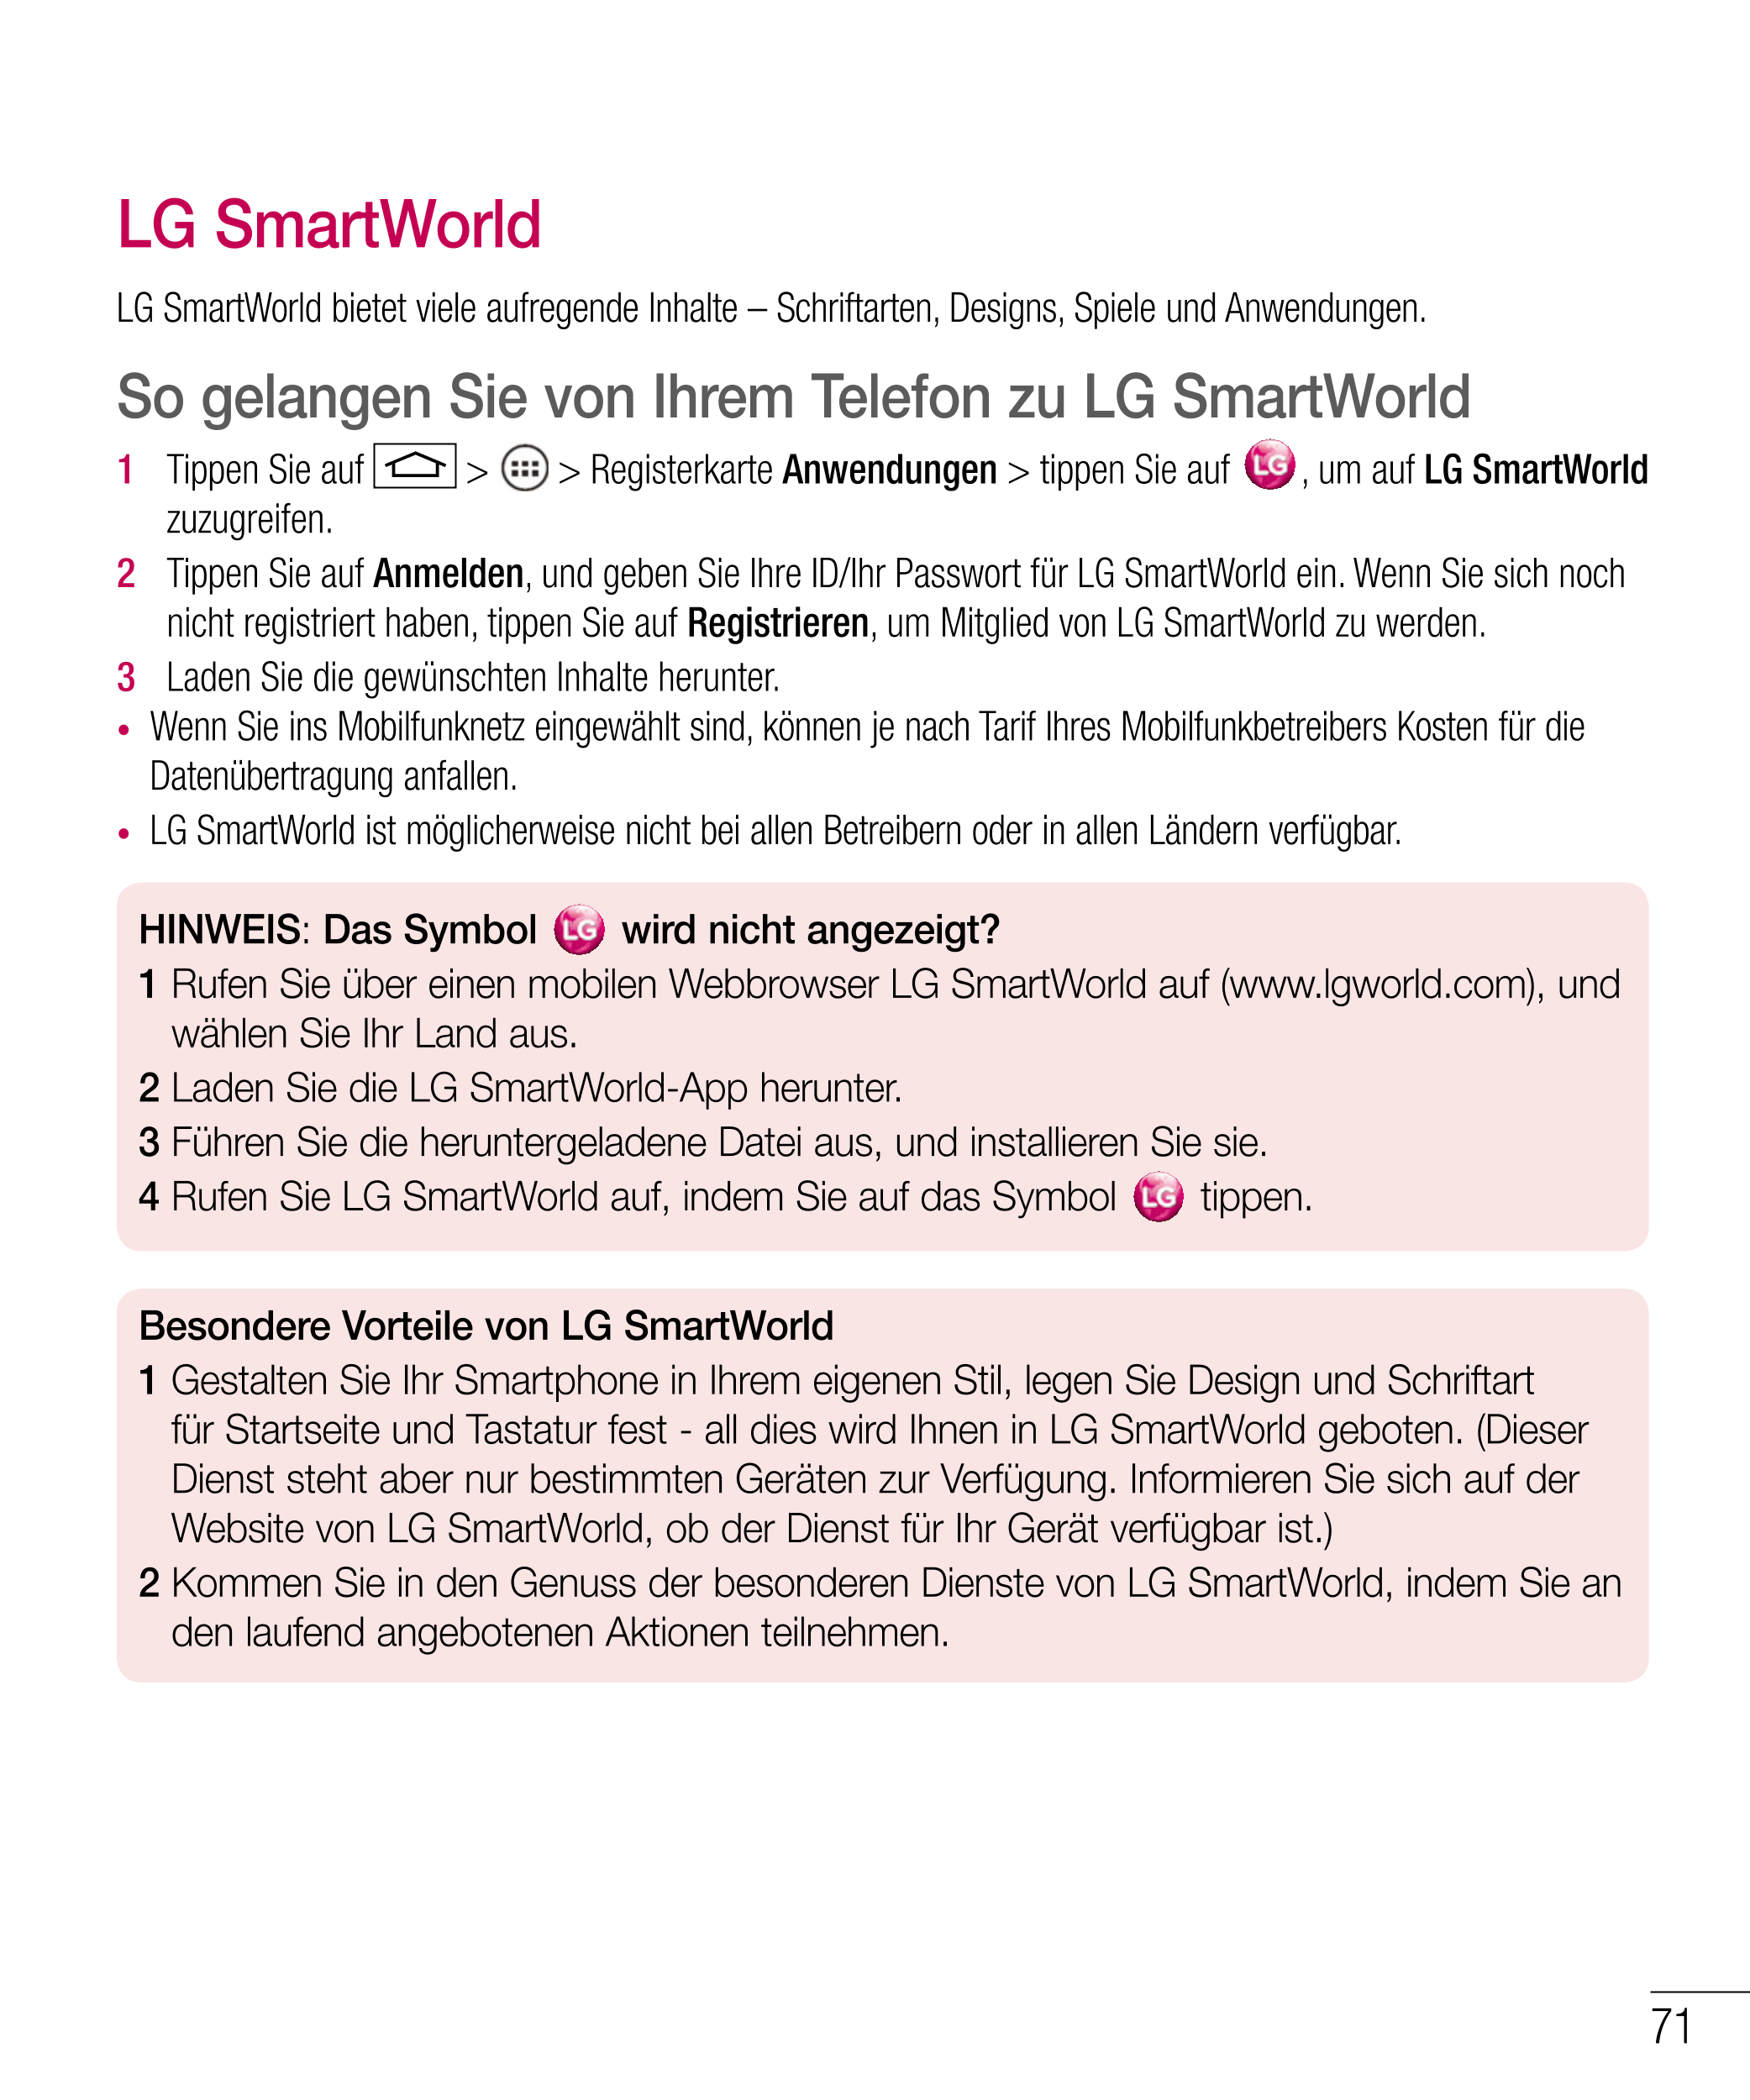 LG SmartWorld
LG SmartWorld bietet viele aufregende Inhalte – Schriftarten, Designs, Spiele und Anwendungen.
So gelangen Sie von